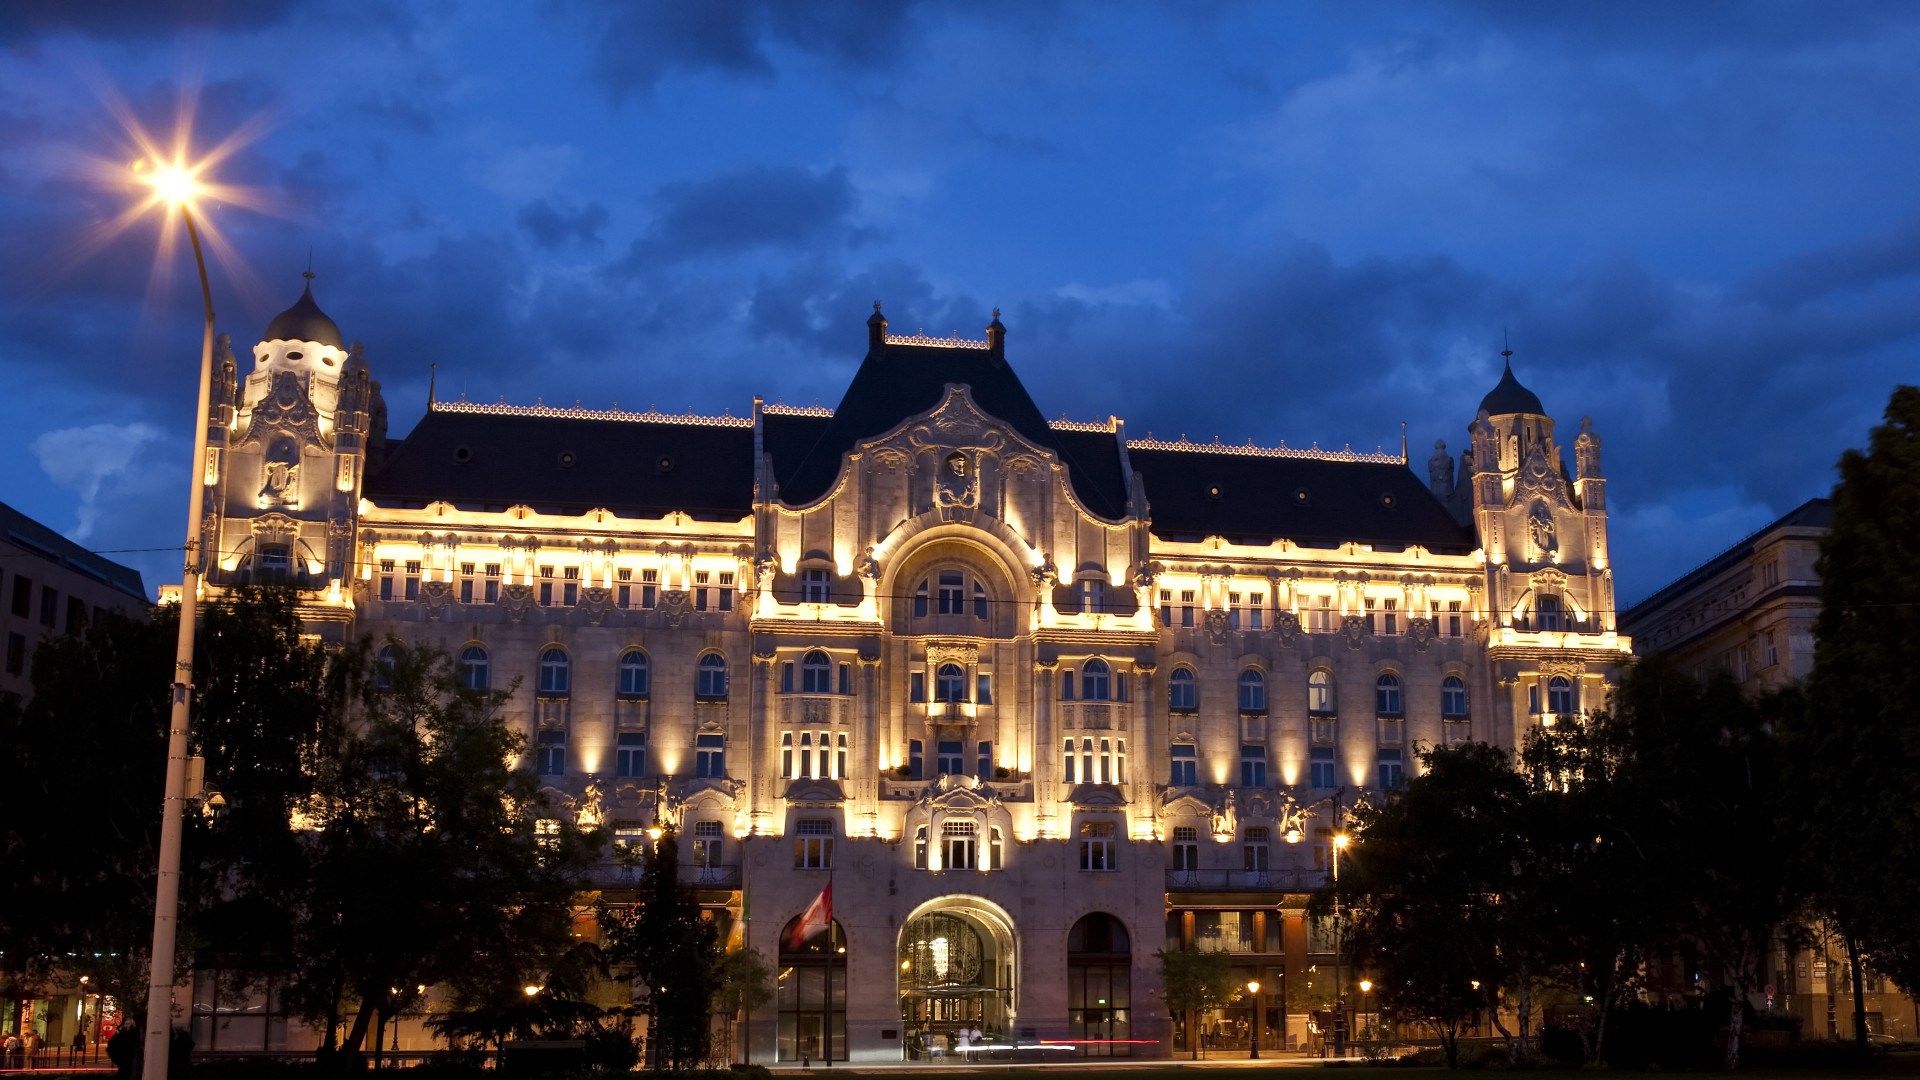 Four Seasons Hotel Gresham Palace, Budapest, Best Hotels of 2017, tourism, travel, vacation, resort (horizontal)